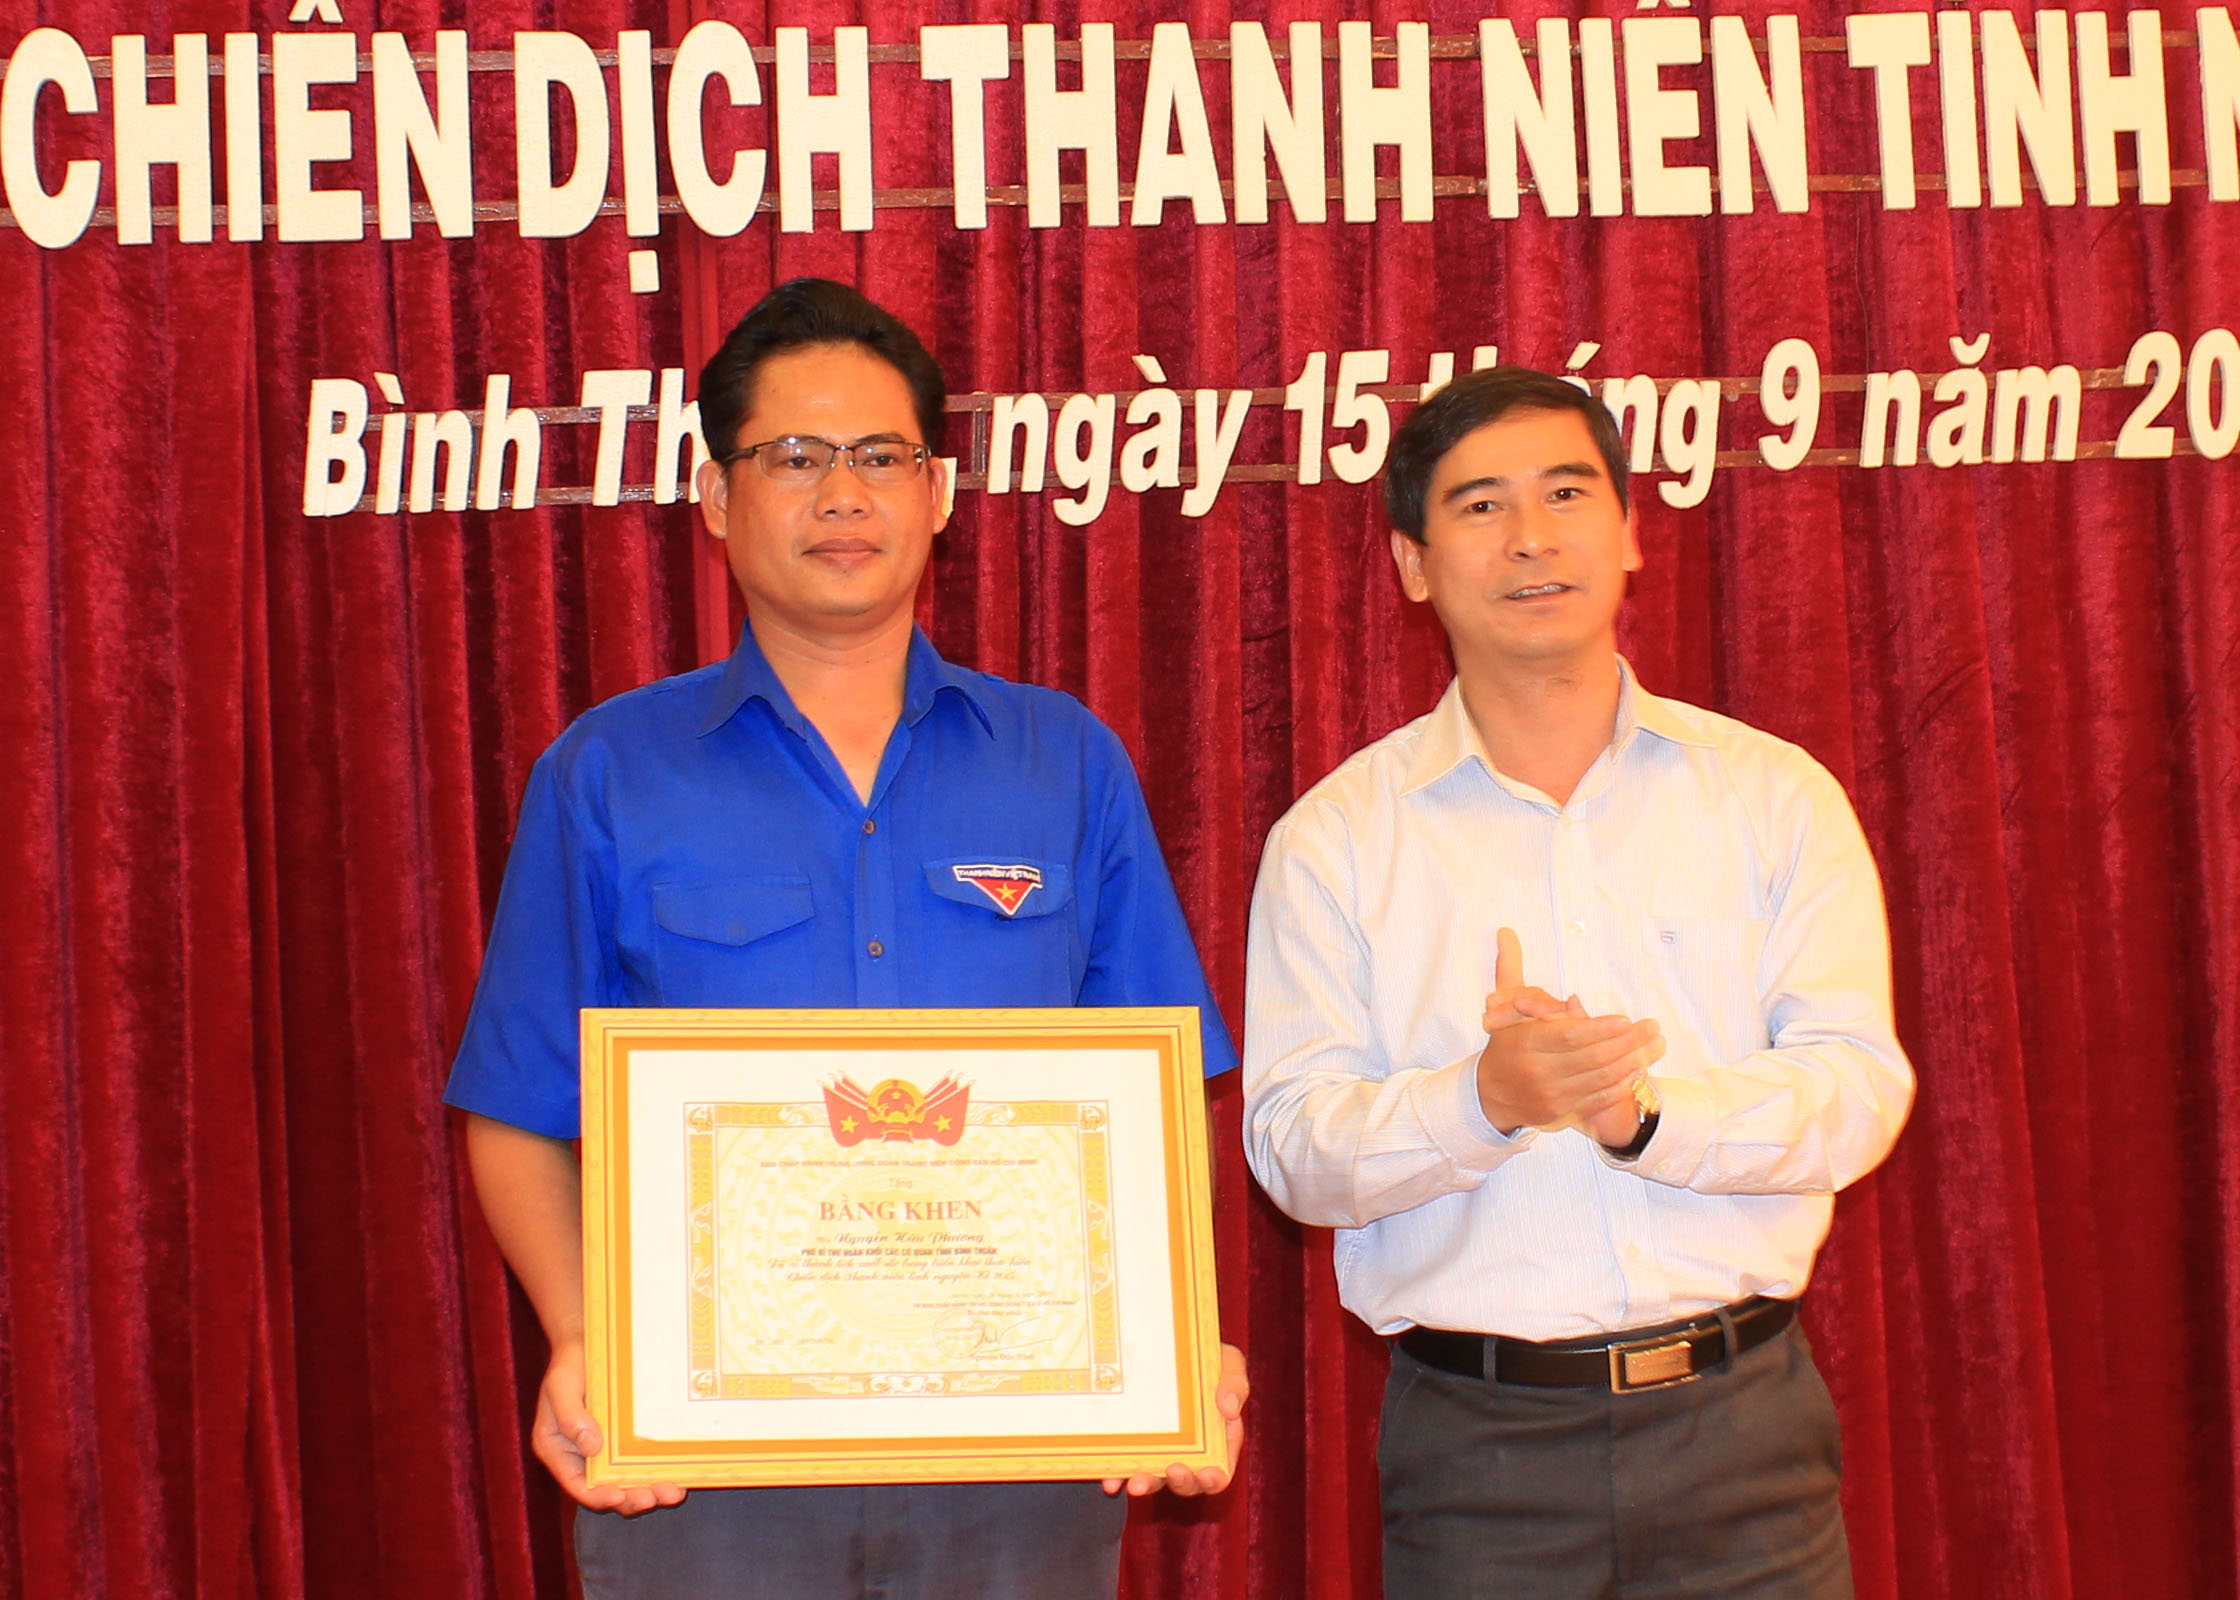 Đ/cc Dương văn An - Phó Bí thư Tỉnh ủy Bình Thuận trao Bằng khen của TW Đoàn cho cá nhân có thành tích xuất sắc trong chiến dịch